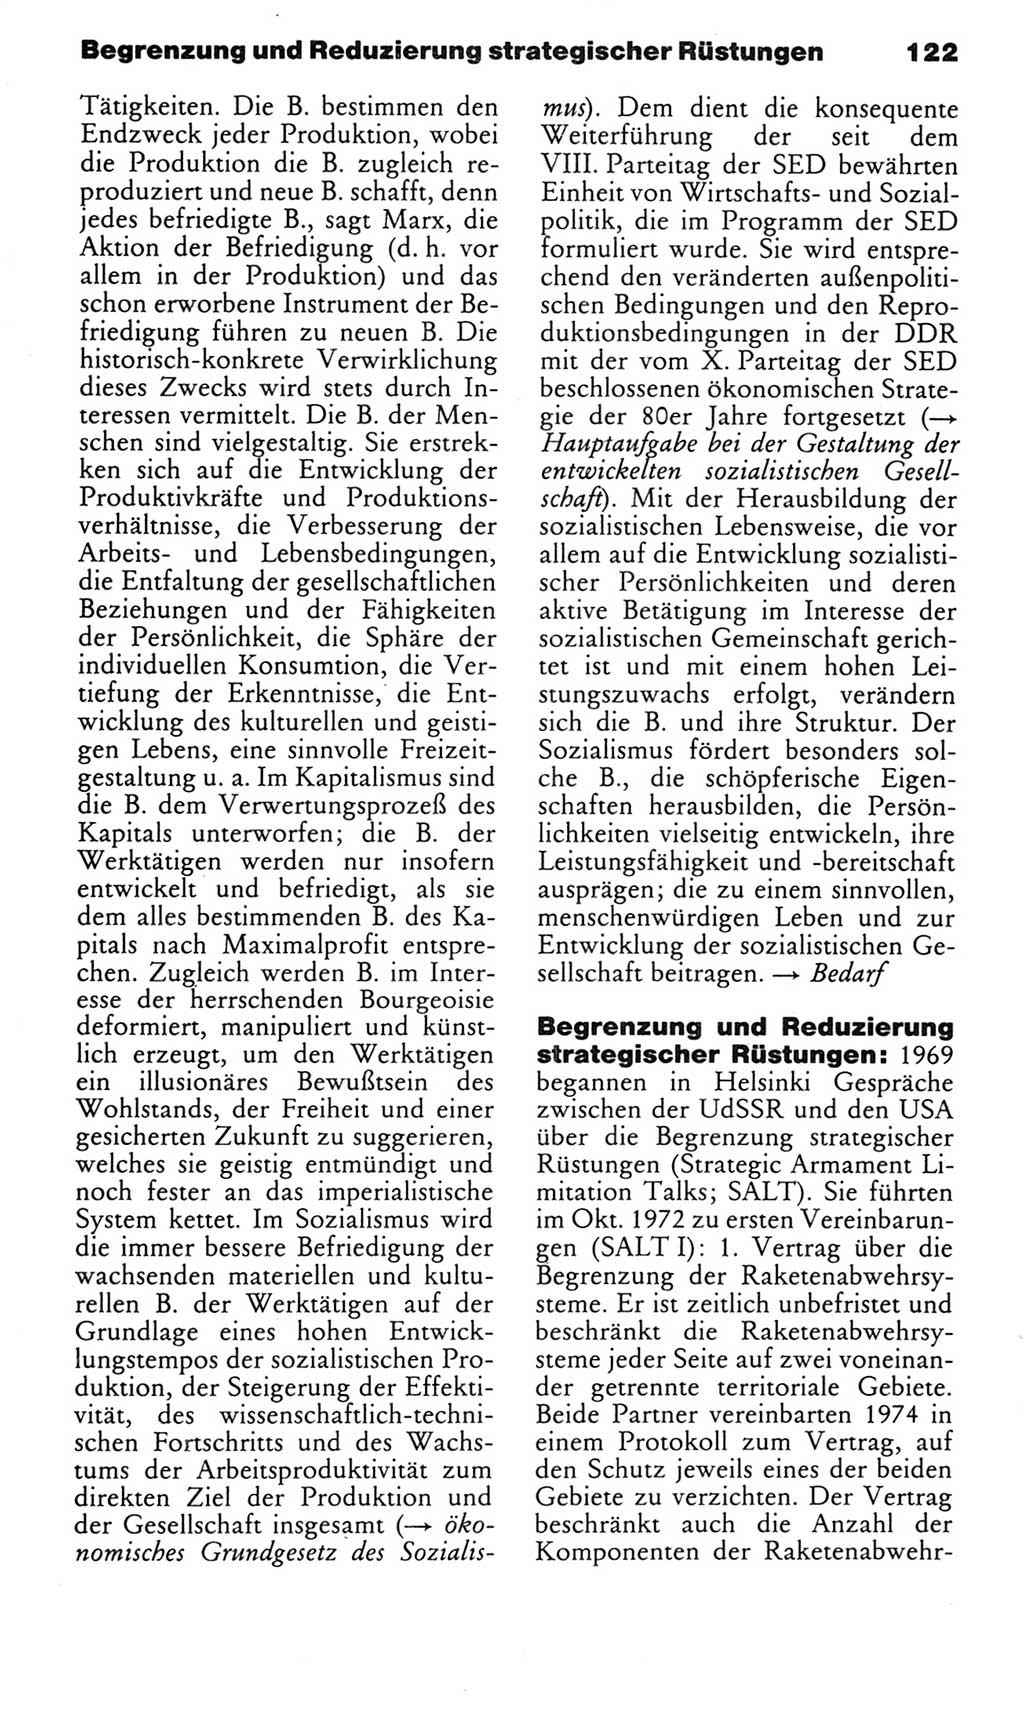 Kleines politisches Wörterbuch [Deutsche Demokratische Republik (DDR)] 1985, Seite 122 (Kl. pol. Wb. DDR 1985, S. 122)